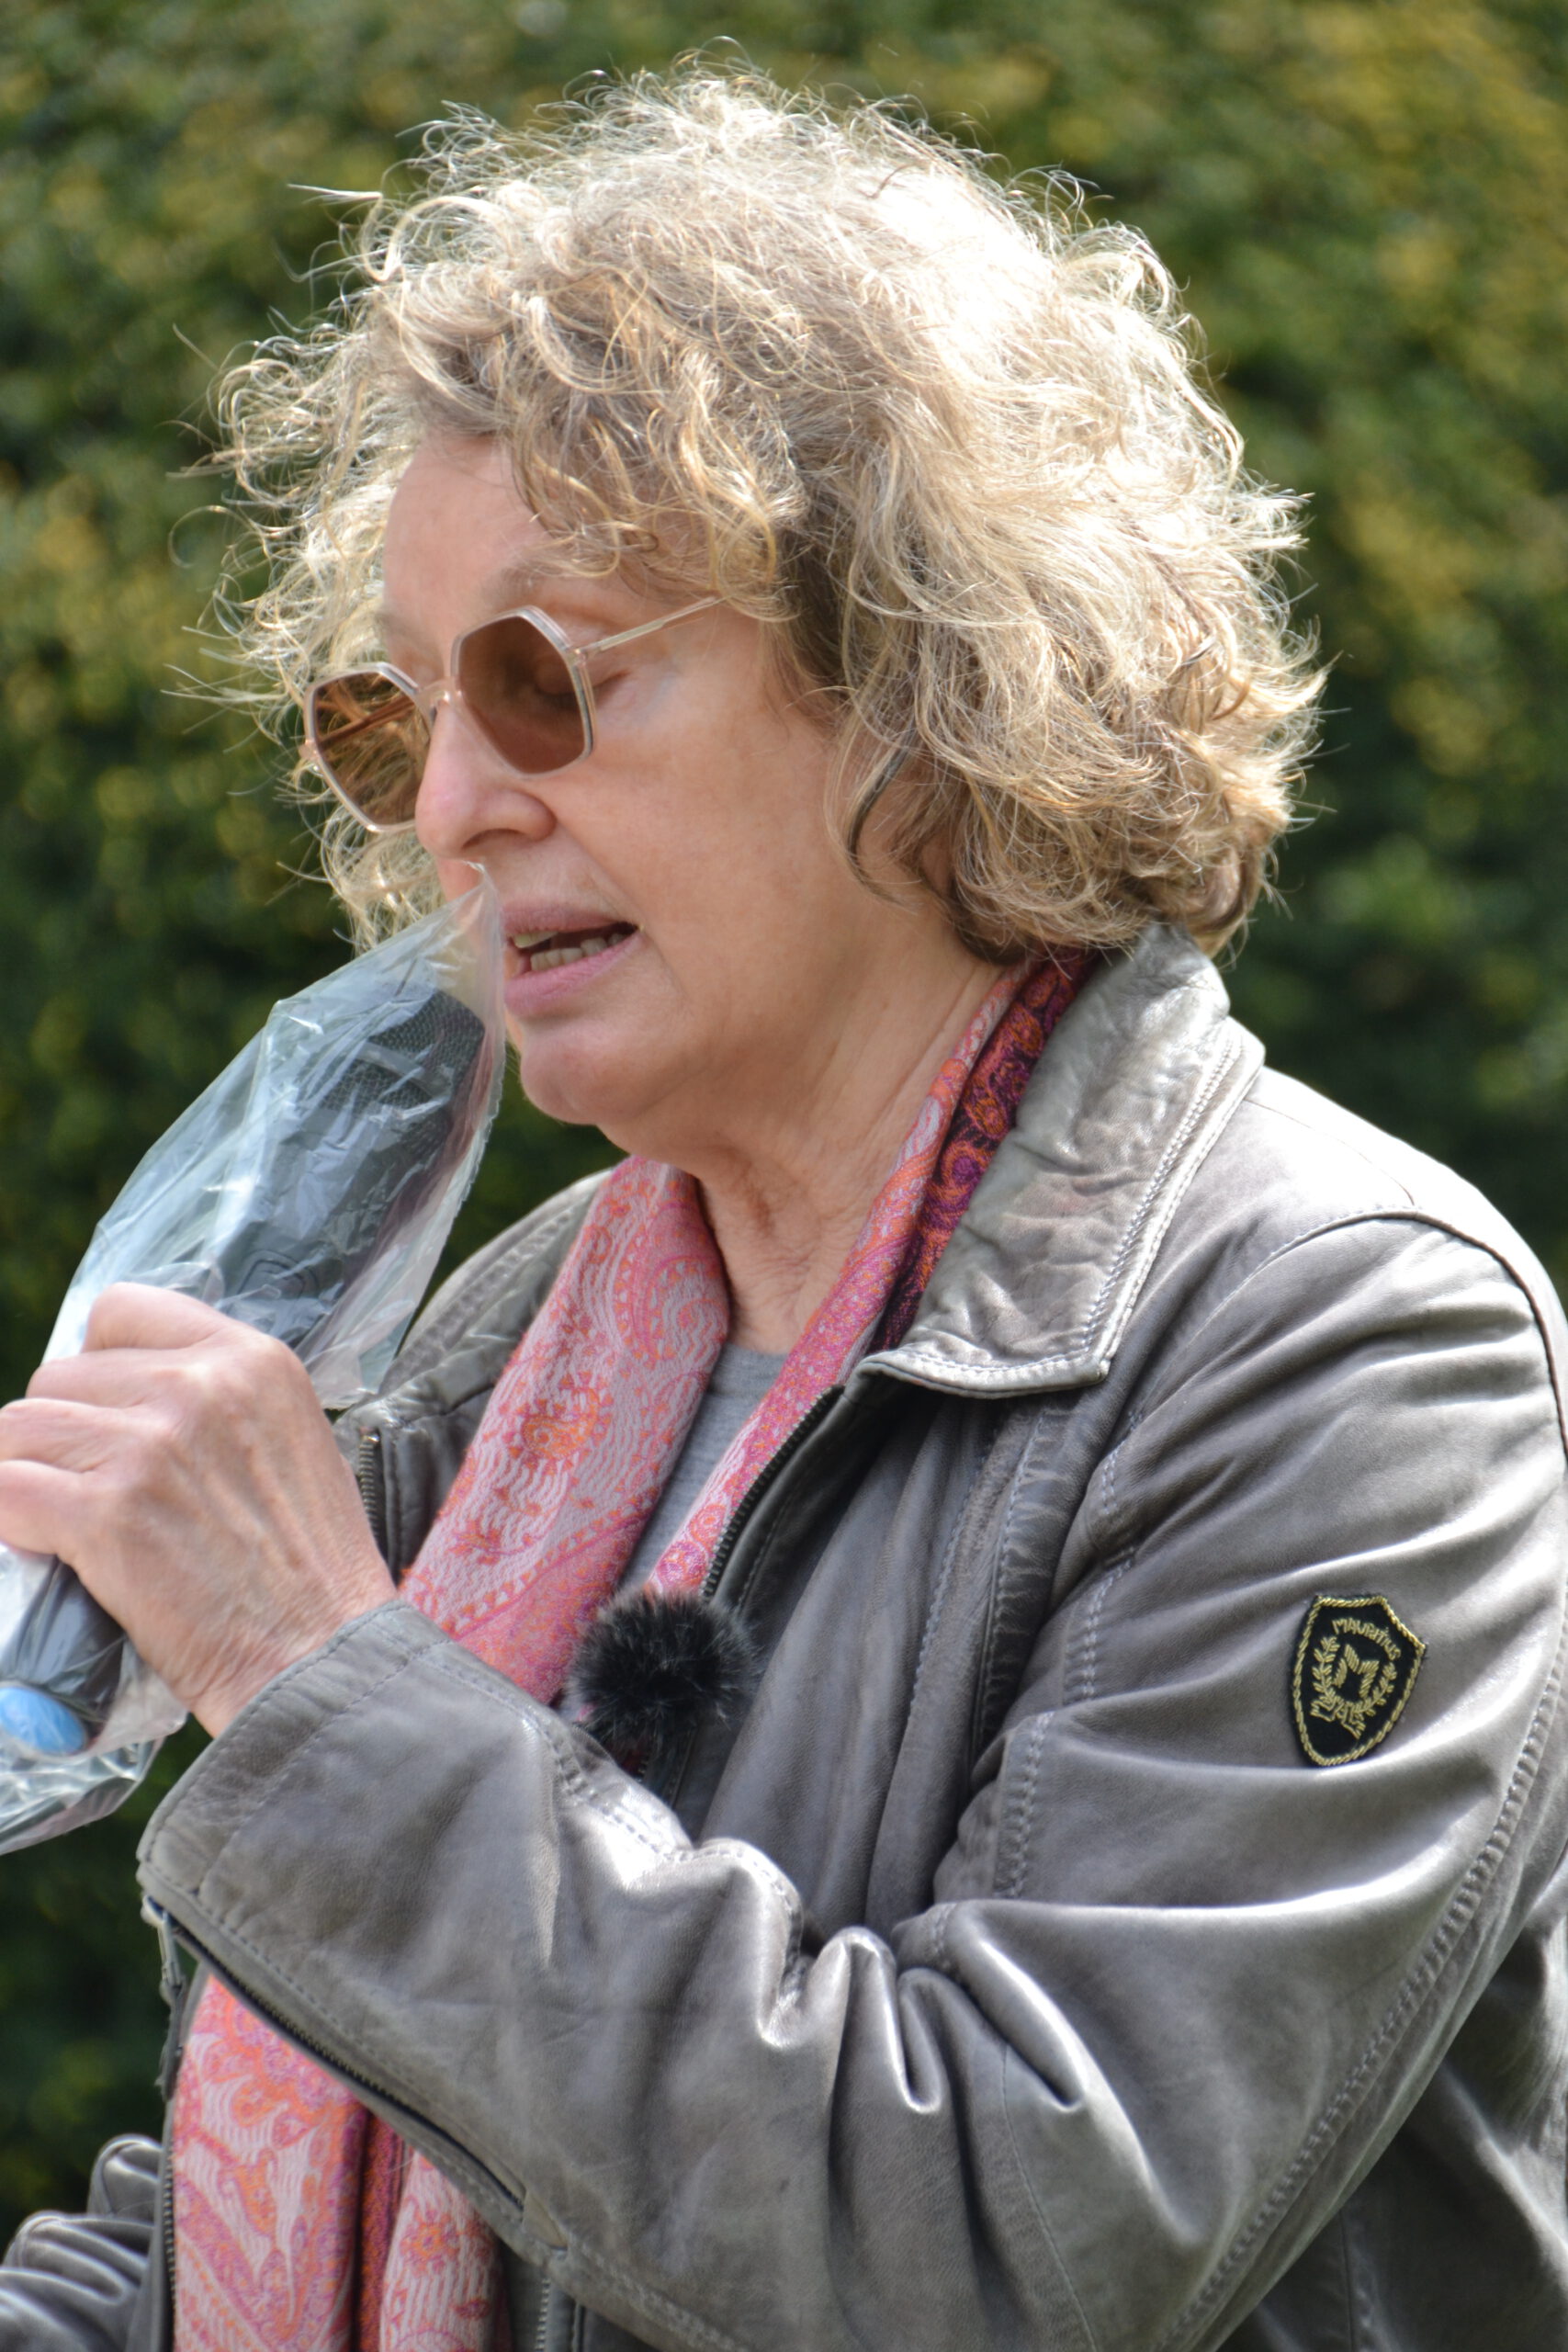 Eine Frau mit Sonnenbrille und dichten grau-blonden kinnlangen Locken spricht in ein Mikrofon, das in eine Plastikfolie eingewickelt ist. Sie trägt ein rosa Tuch und eine erdgraue Lederjacke. Im Hintergrund grünes Blattwerk.